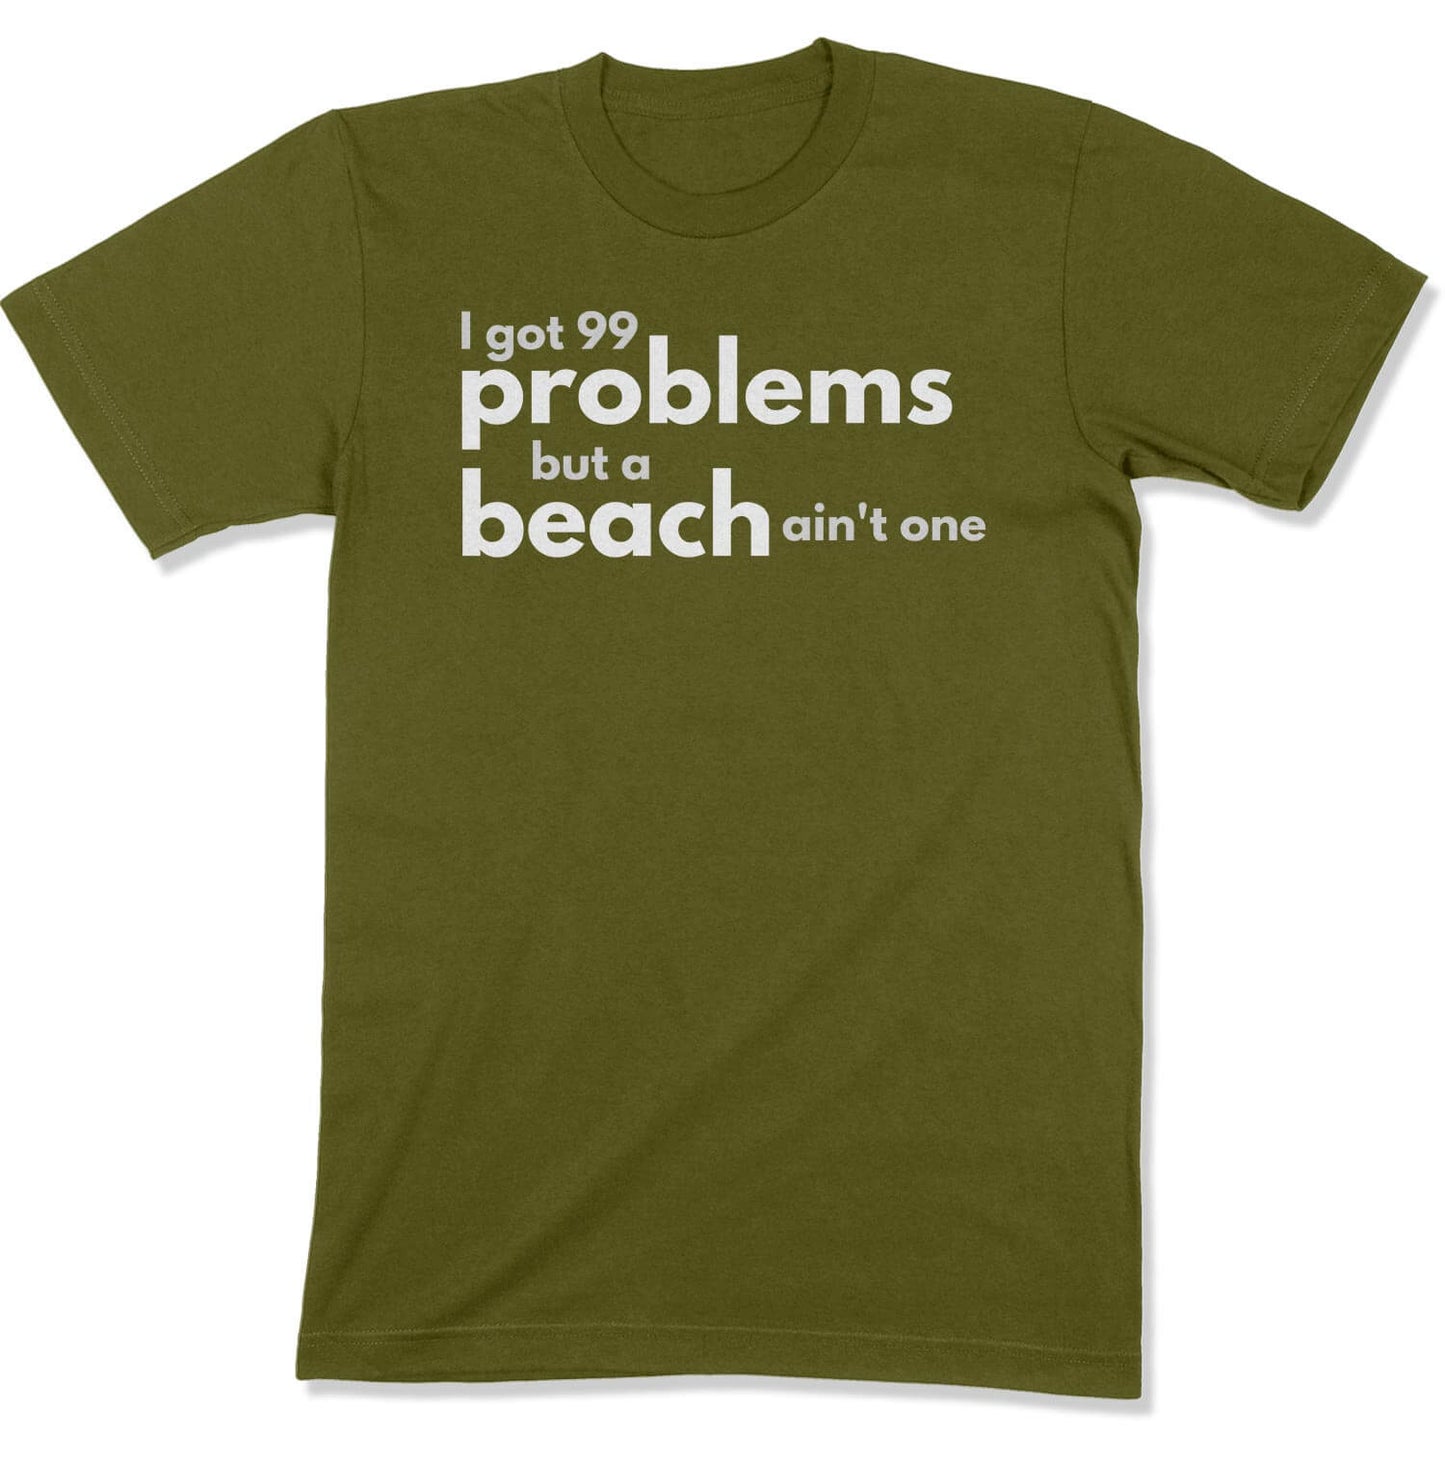 99 Problems Unisex T-Shirt in Color: Olive - East Coast AF Apparel